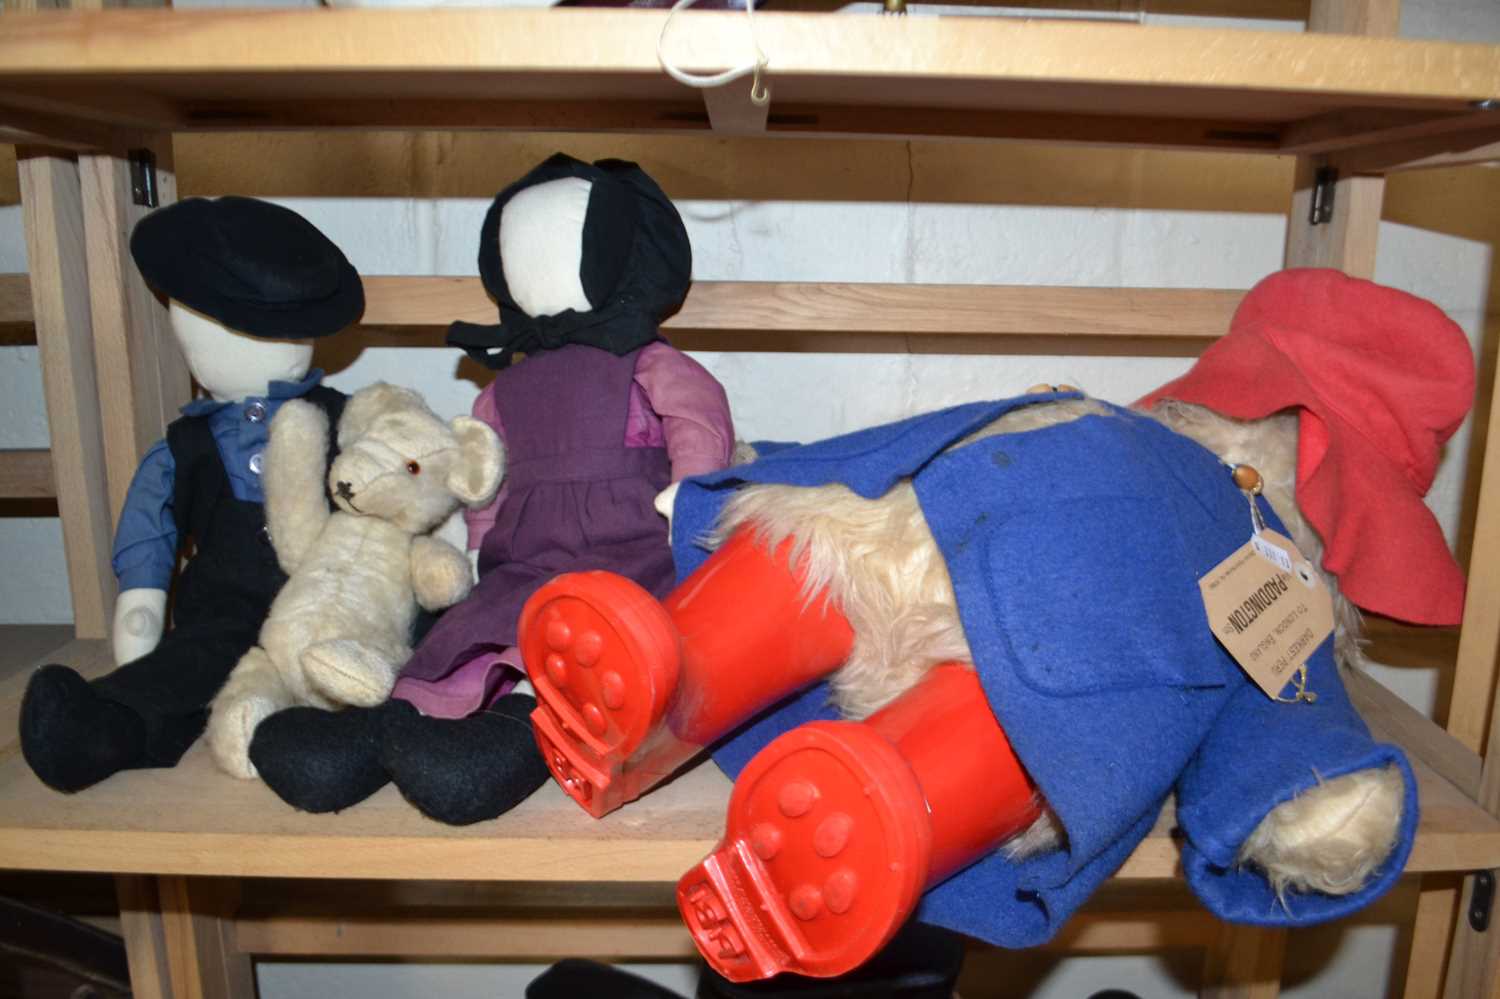 Vintage Paddington Bear and various other dolls and teddy bear